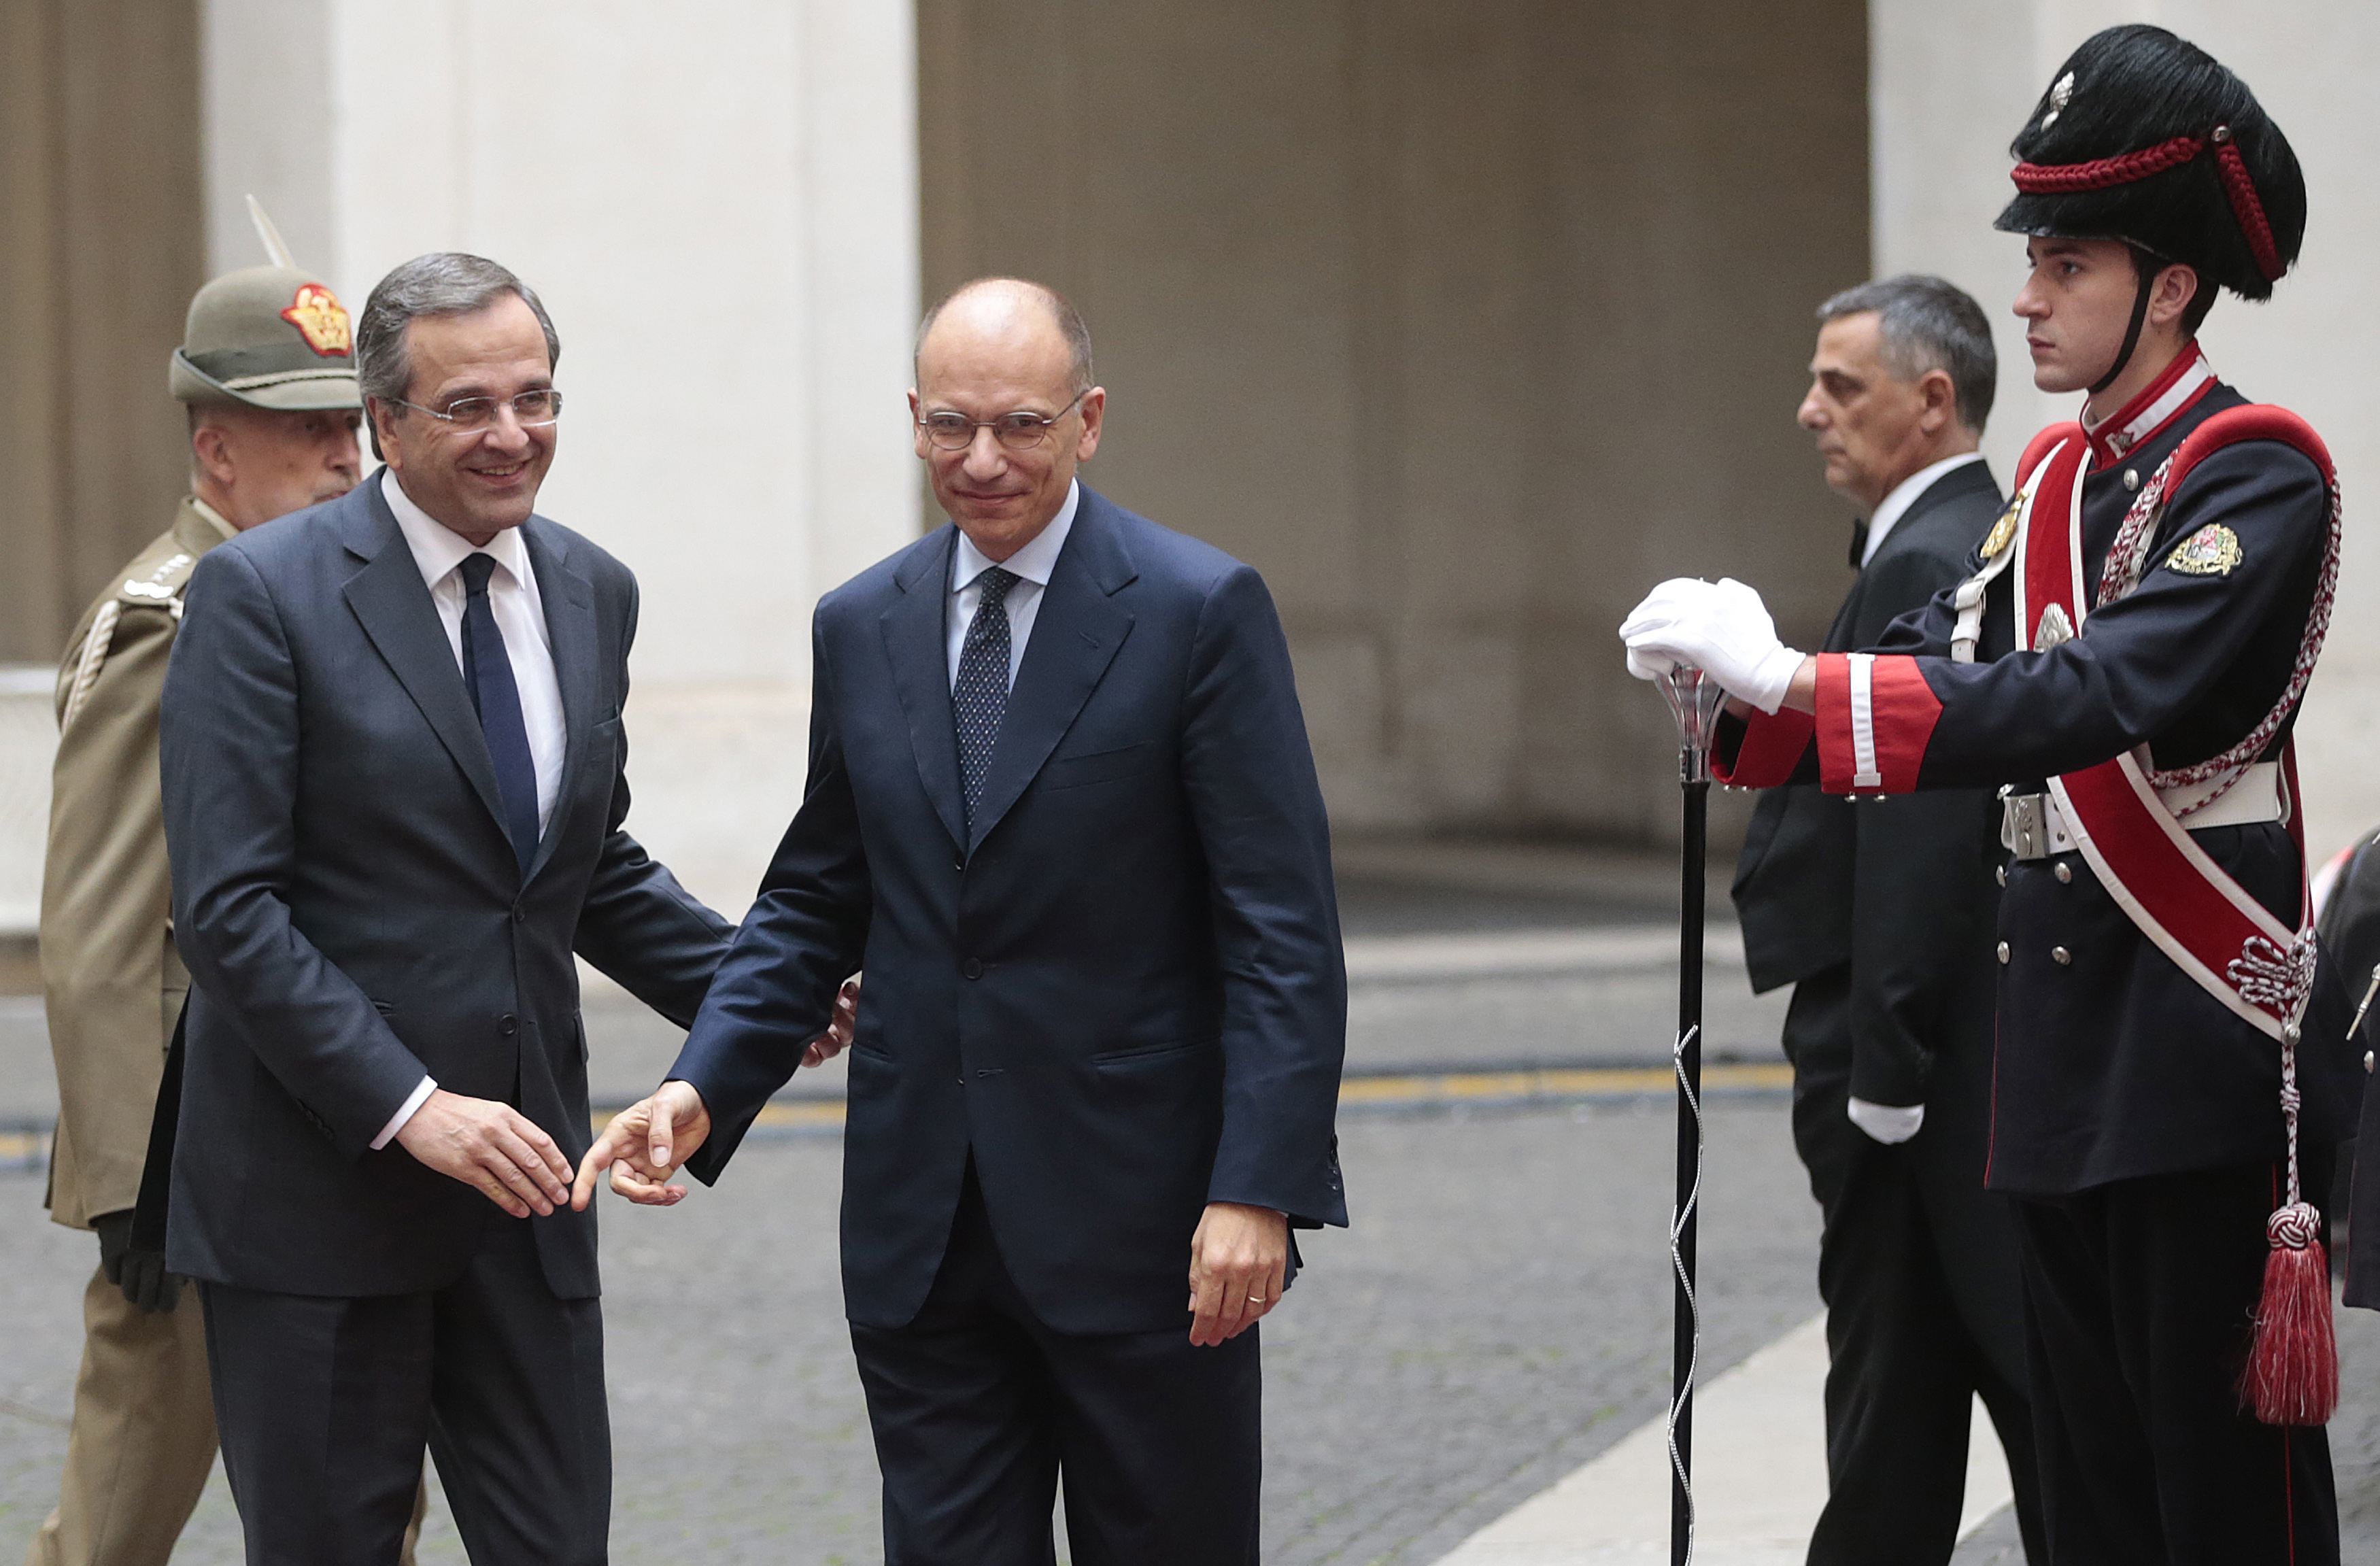 ΦΩΤΟ REUTERS - Ο Αντώνης Σαμαράς με τον ιταλό πρωθυπουργό